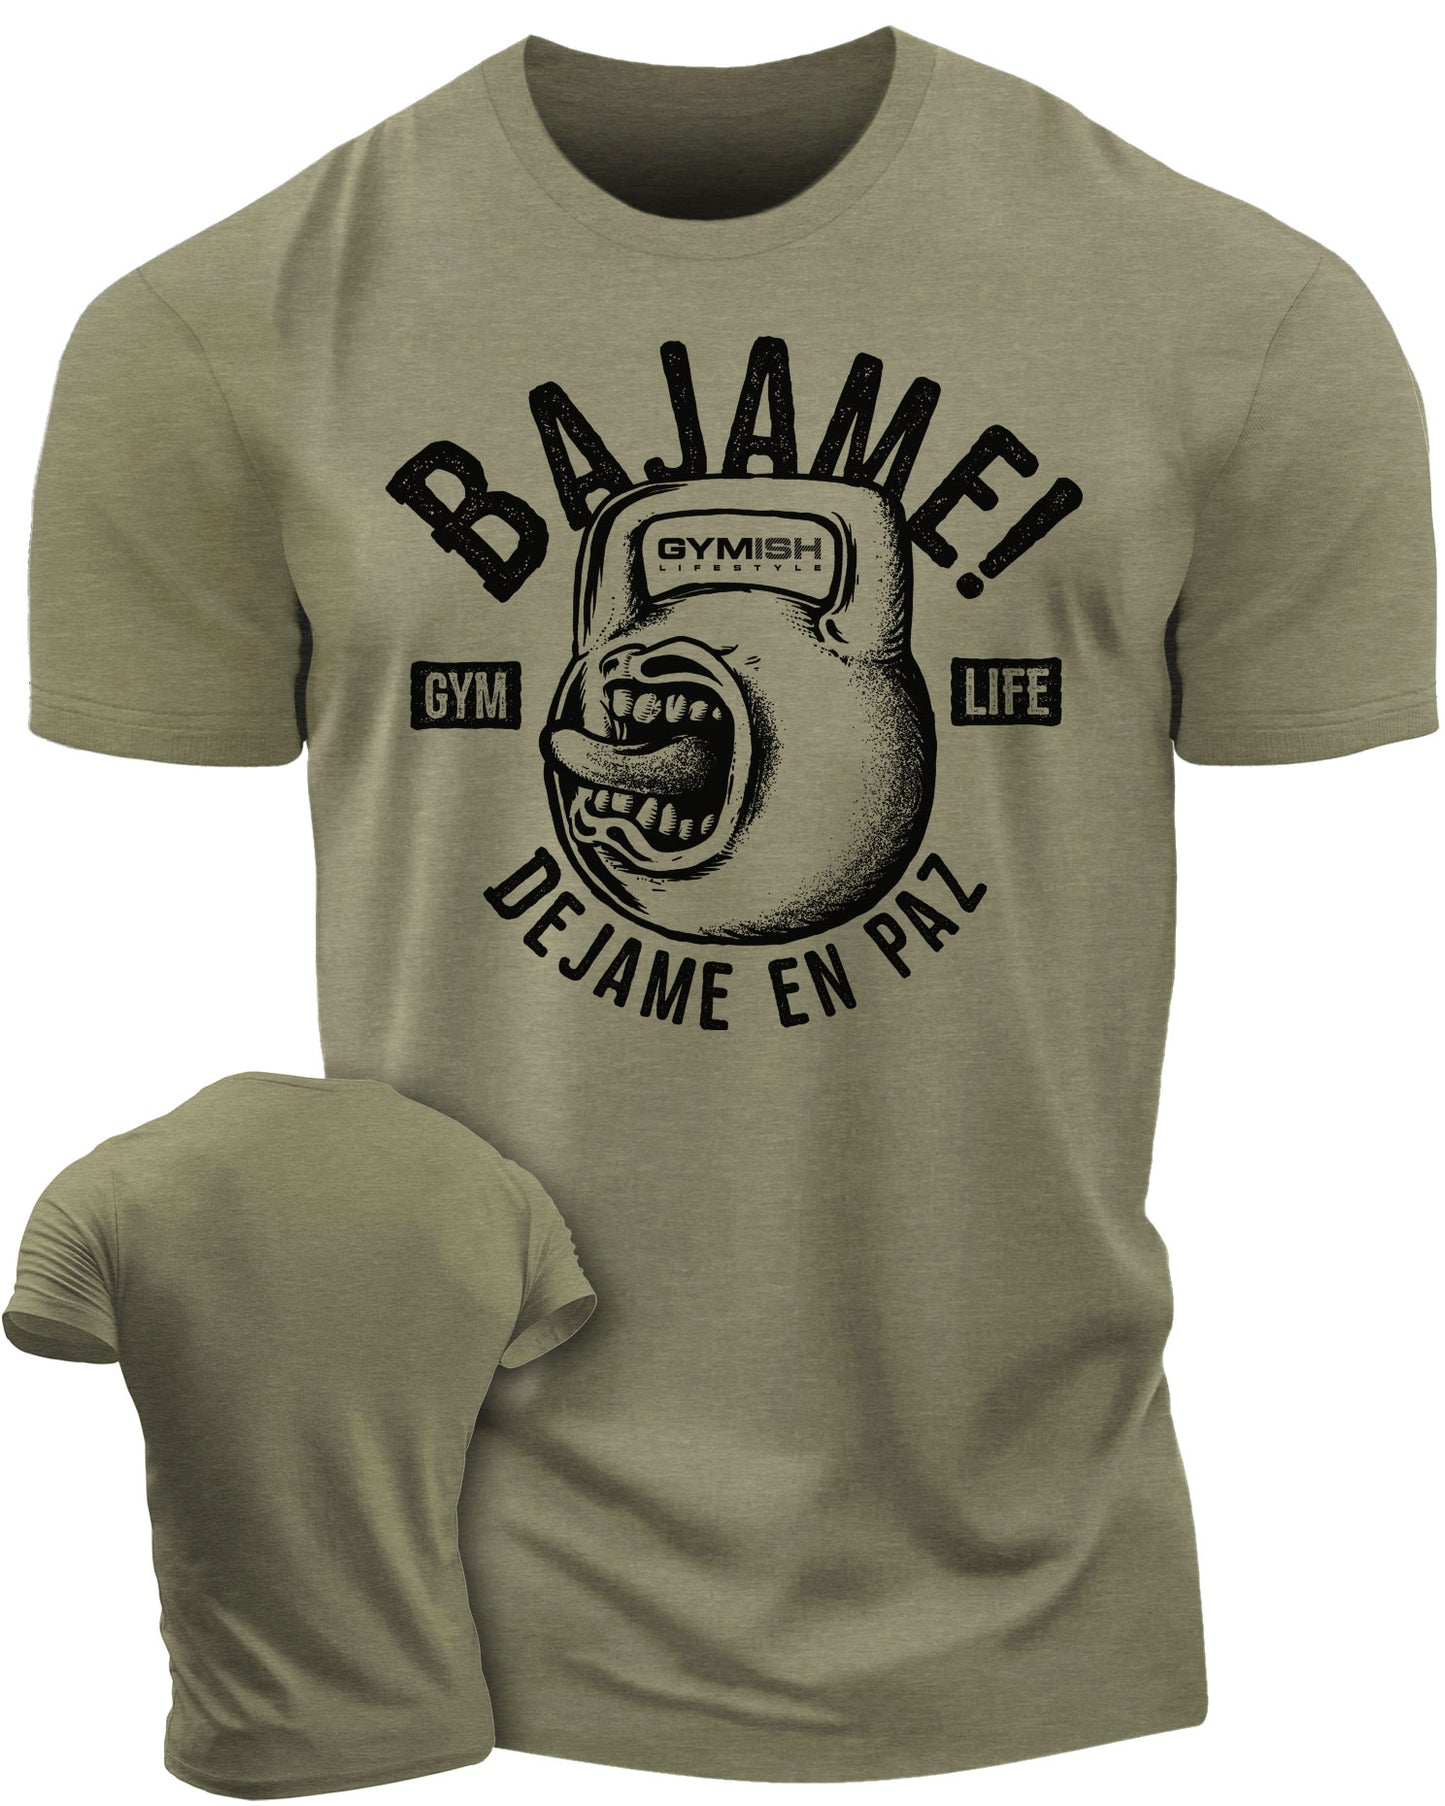 Bajame! Dejame en paz Workout Gym T-Shirt Funny Gym Shirt for Men Camiseta de gimnasio de entrenamiento